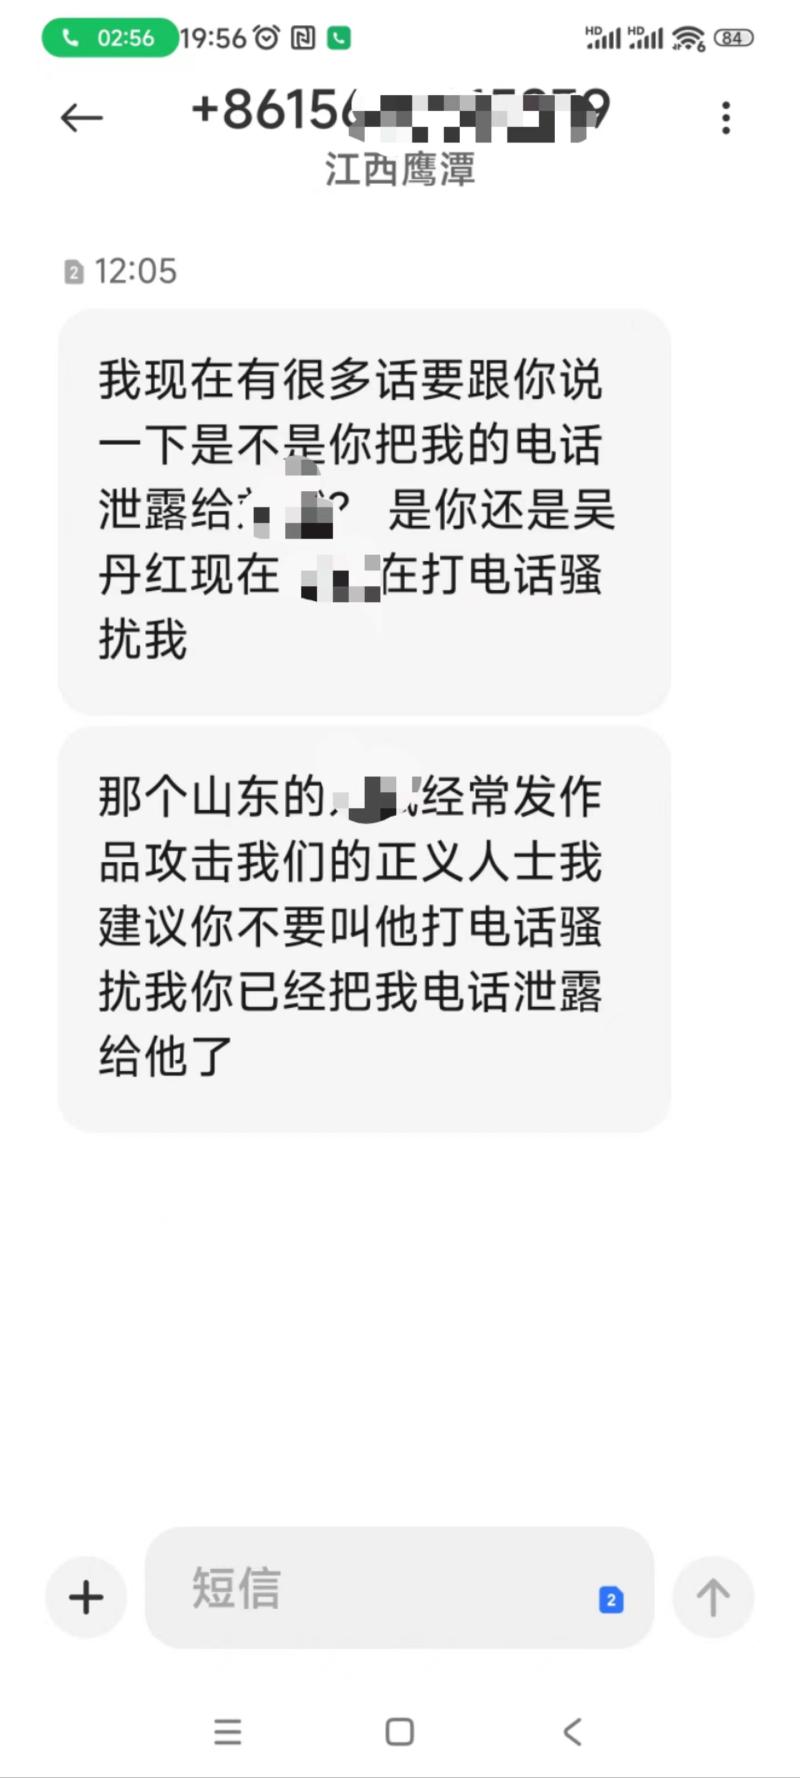 警方已立案,劳荣枝辩护律师称收到死亡威胁电话受理|北京市|律师|吴丹红|电话|威胁|劳荣枝|赵德芳